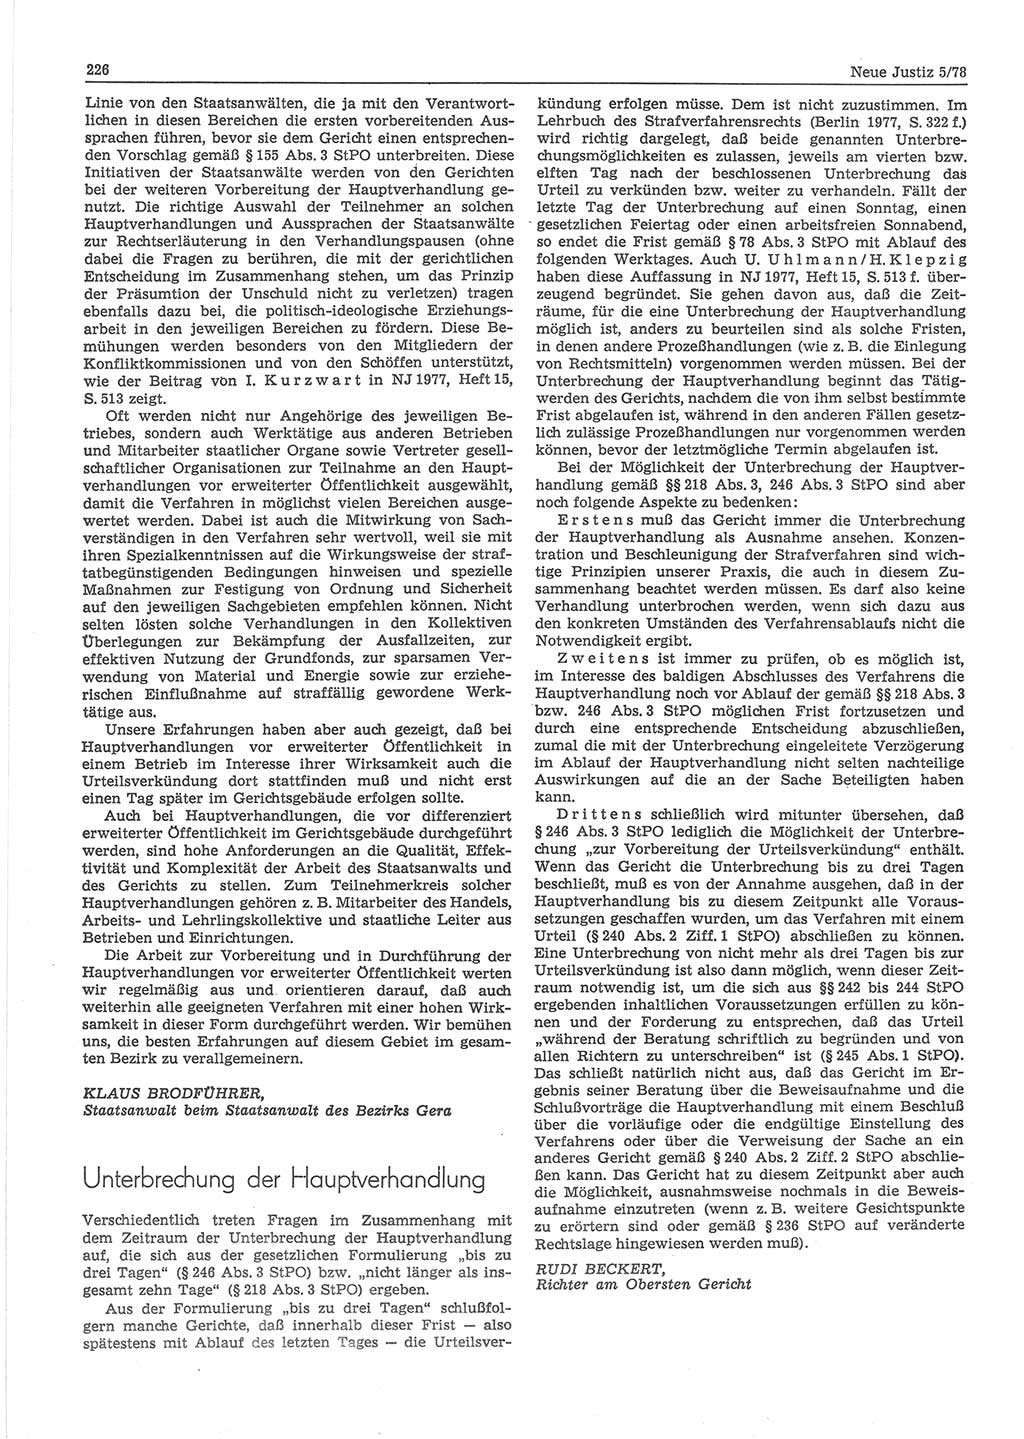 Neue Justiz (NJ), Zeitschrift für sozialistisches Recht und Gesetzlichkeit [Deutsche Demokratische Republik (DDR)], 32. Jahrgang 1978, Seite 226 (NJ DDR 1978, S. 226)